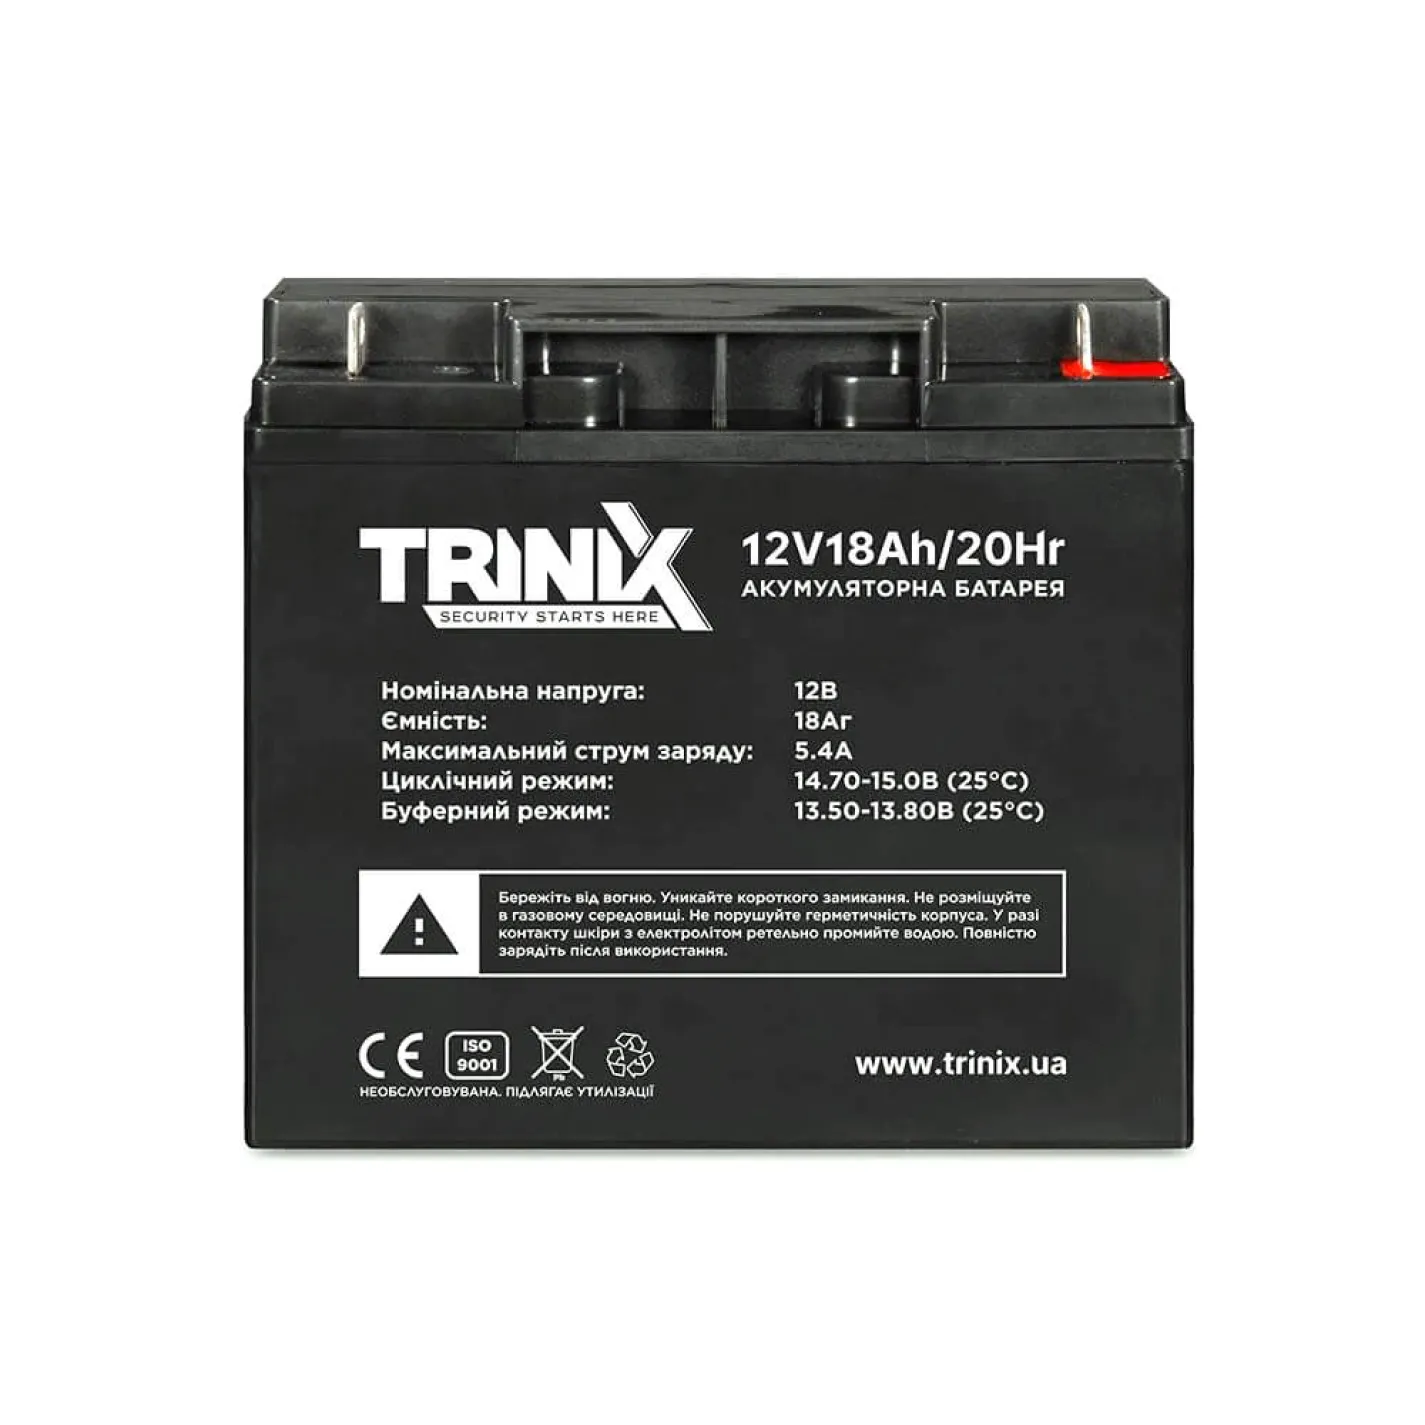 Акумуляторна батарея свинцево-кислотна Trinix 12V18Ah/20Hr AGM 12В 18Аг - Фото 1